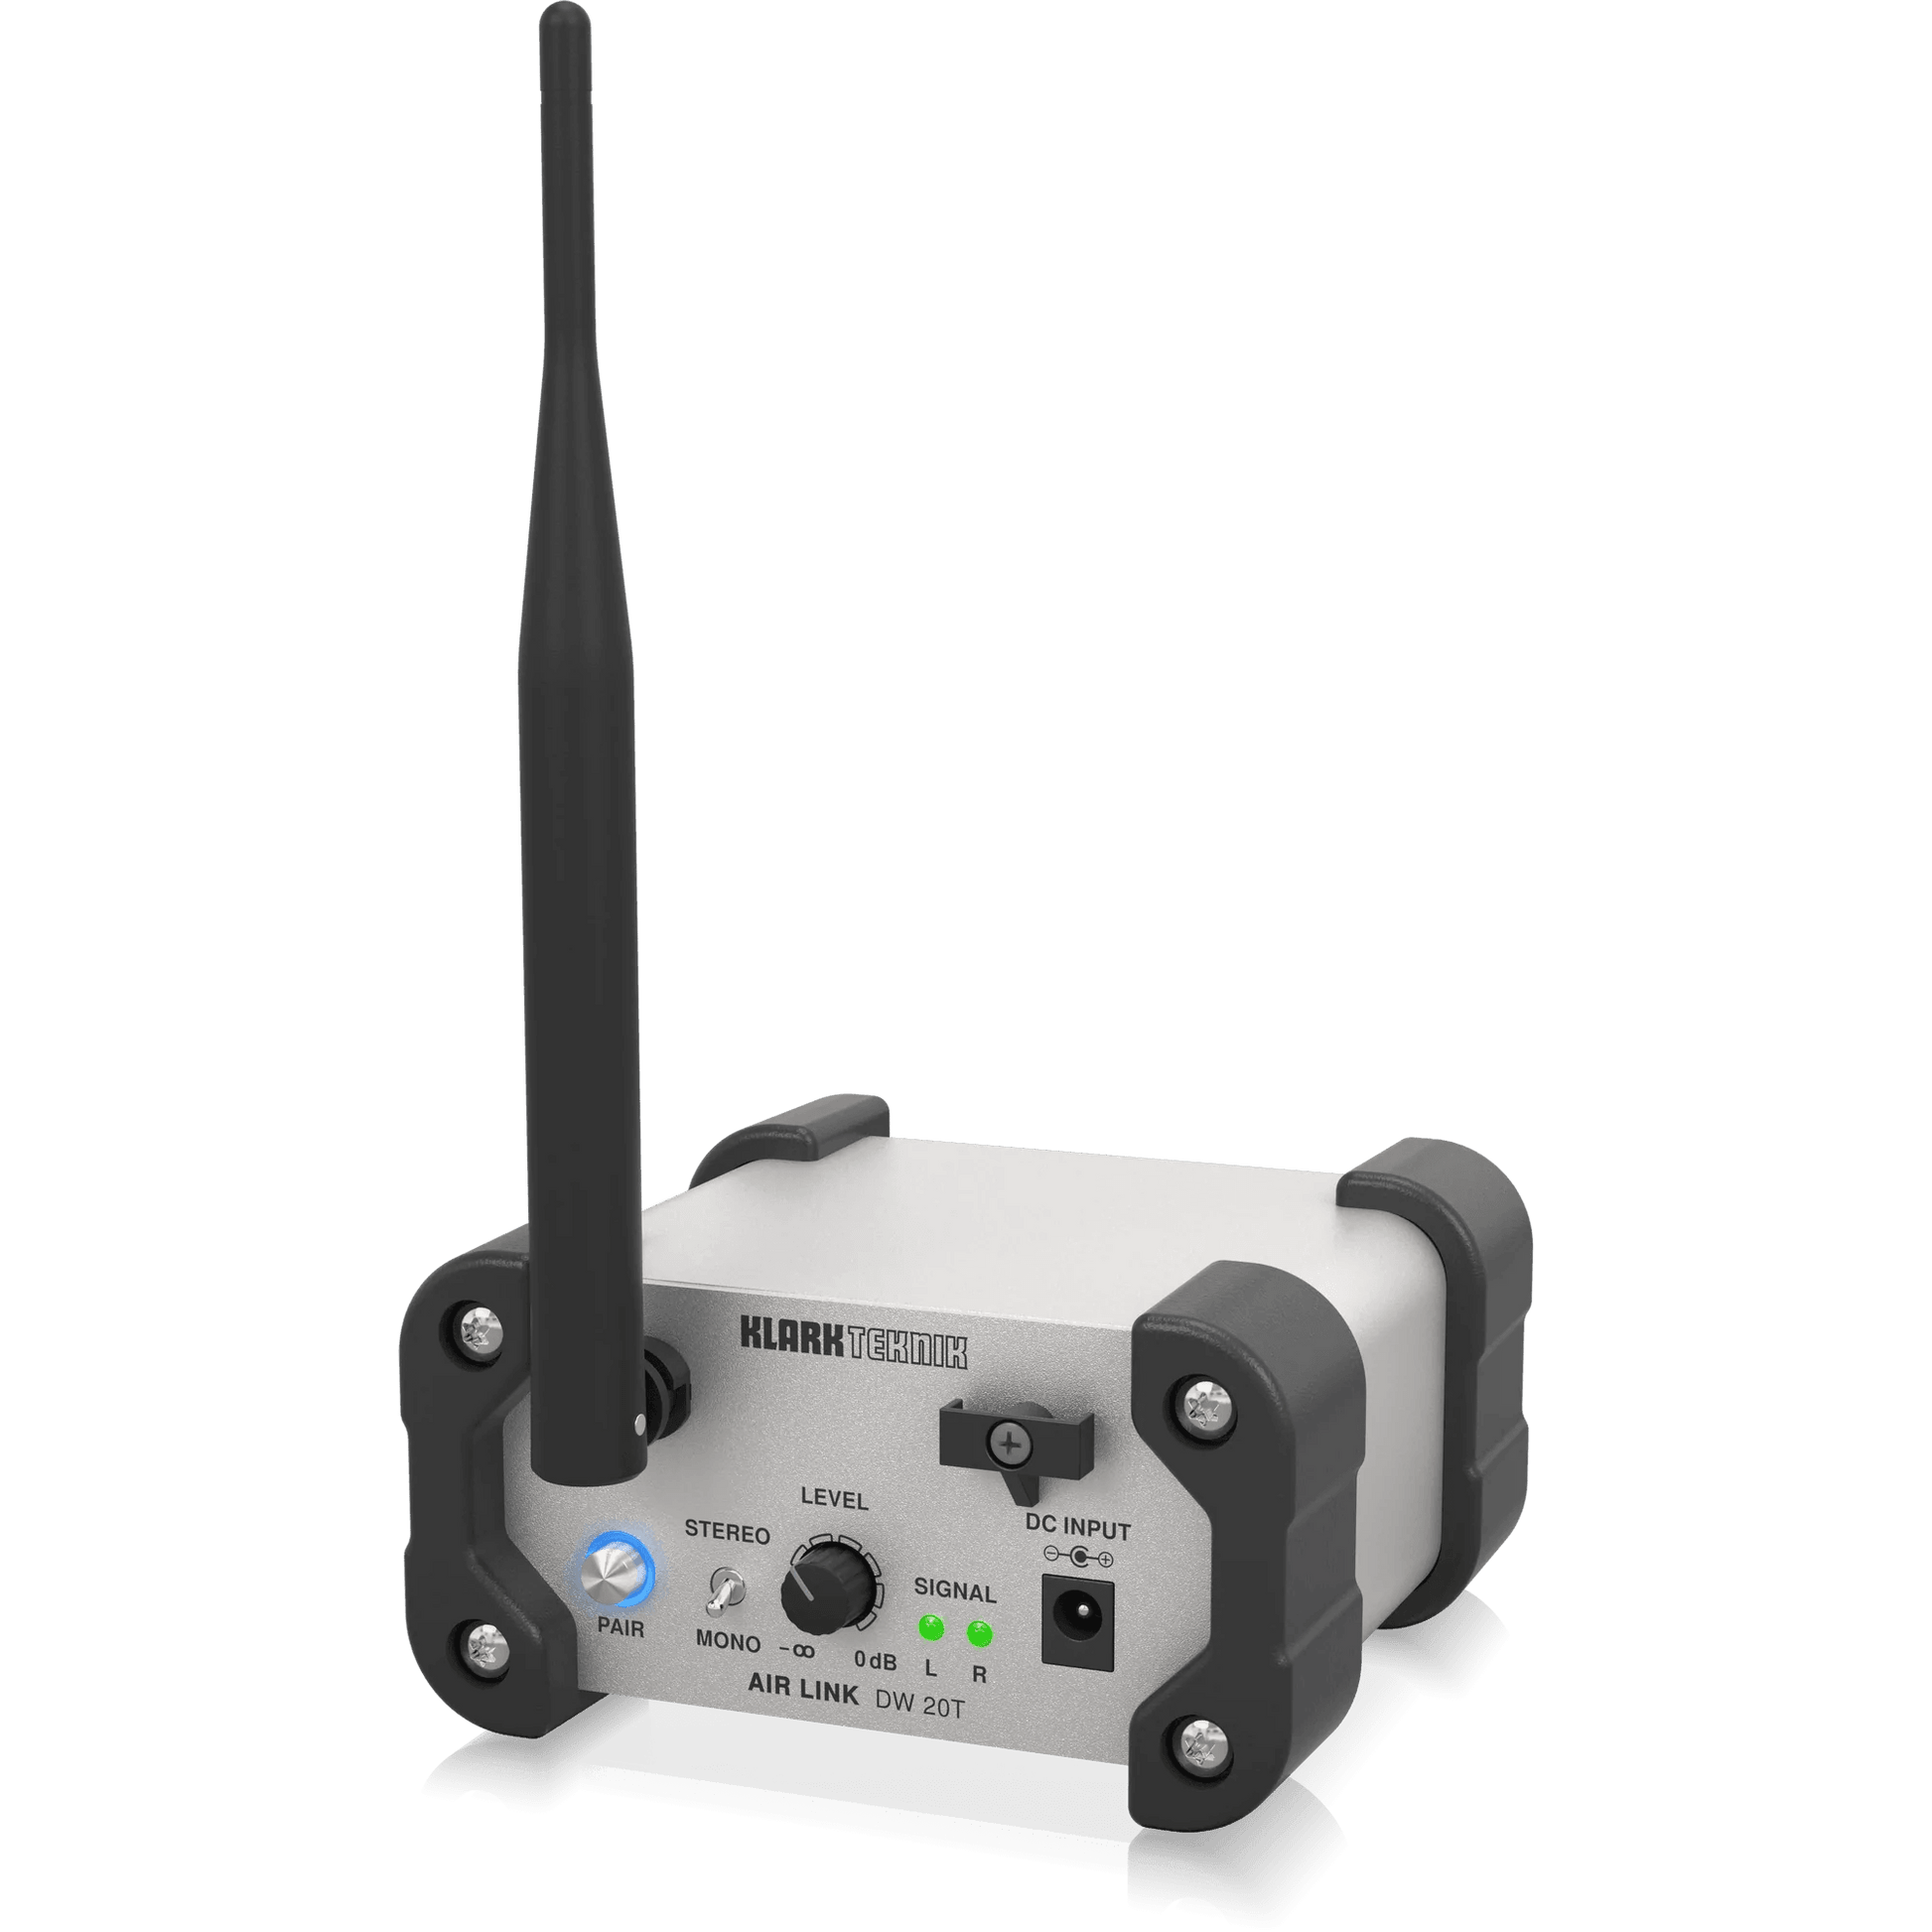 Klark Teknik DW 20T 2.4 GHz Wireless Stereo Transmitter for High-Performance Stereo Audio Broadcasting